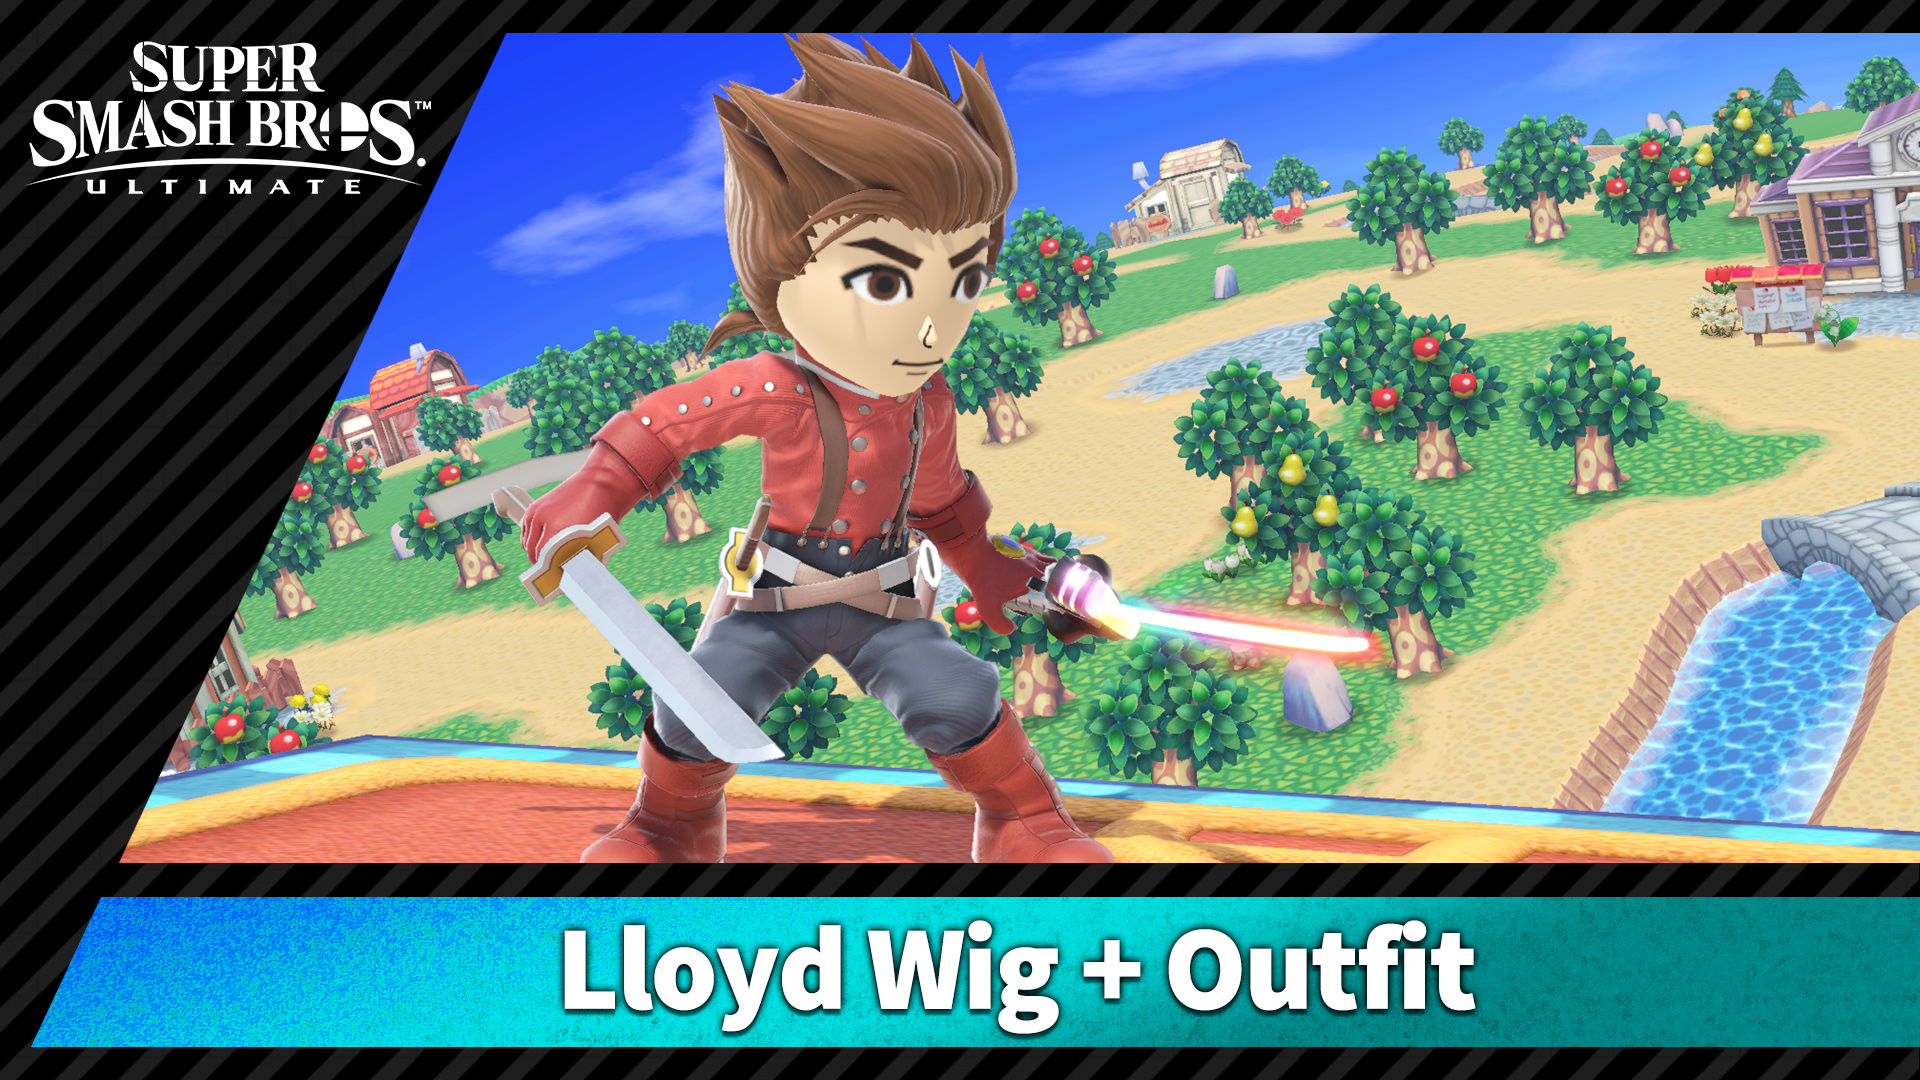 Lloyd Wig + Outfit